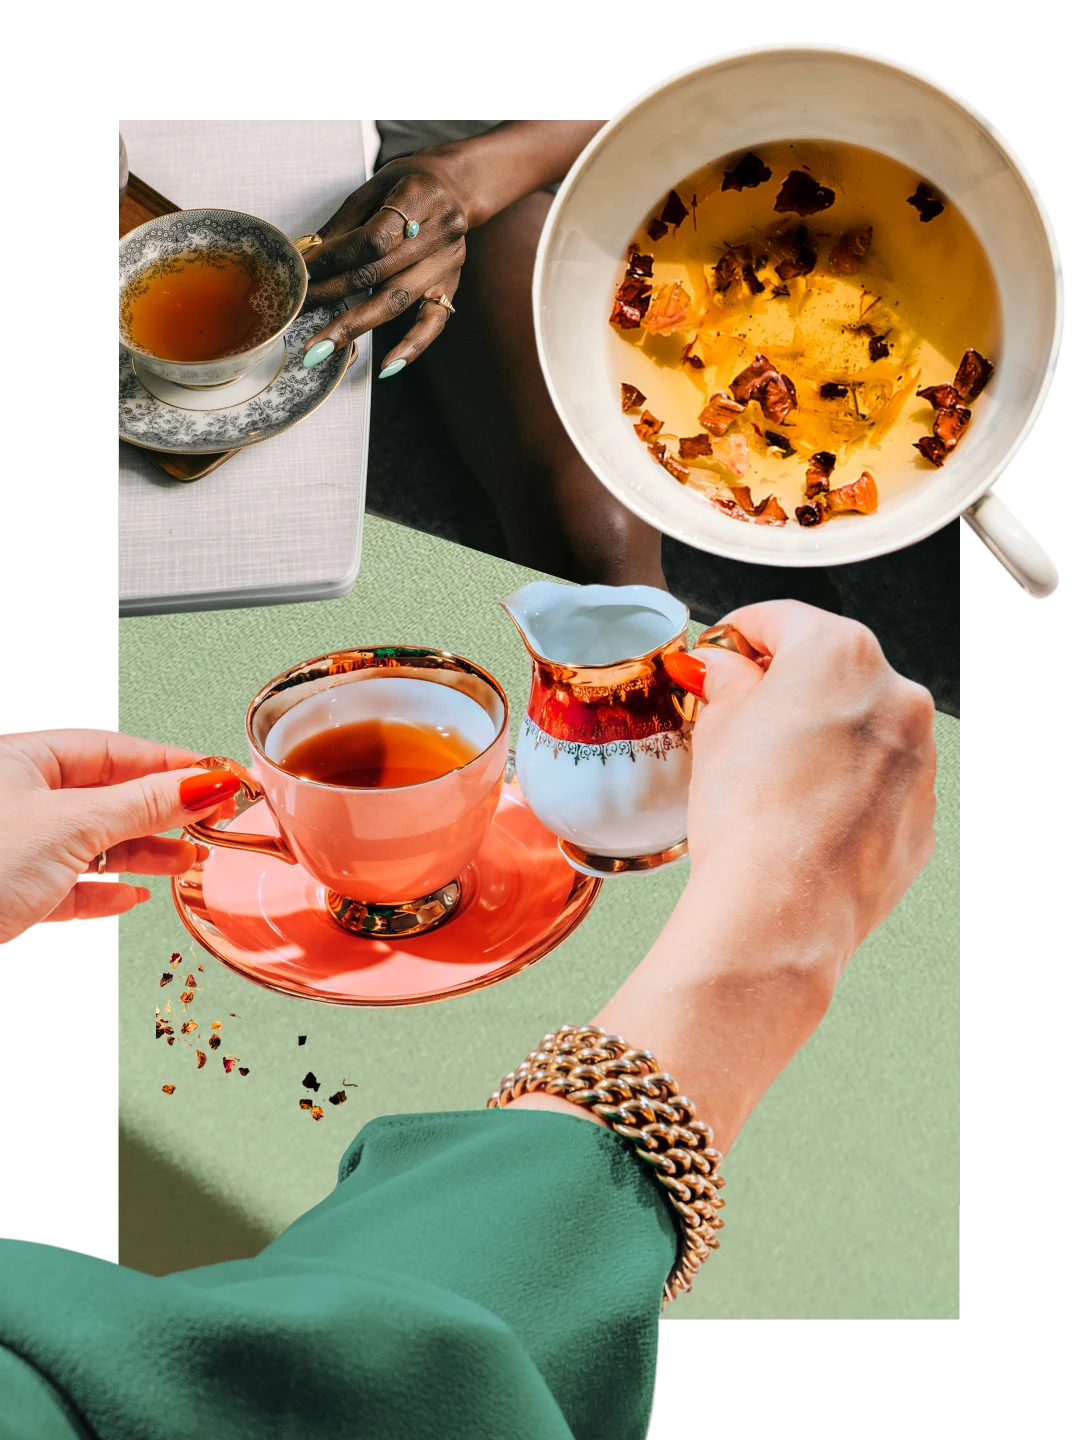 Eine Collage mit Teetassen, die mit bernsteinfarbenem Tee gefüllt sind, vor einem lindgrünen Hintergrund. Eine weiße Hand in einem grünen Ärmel hebt ein weiß-rotes Milchkännchen hoch. Eine Schwarze Hand hält den Griff einer antiken Teetasse.
